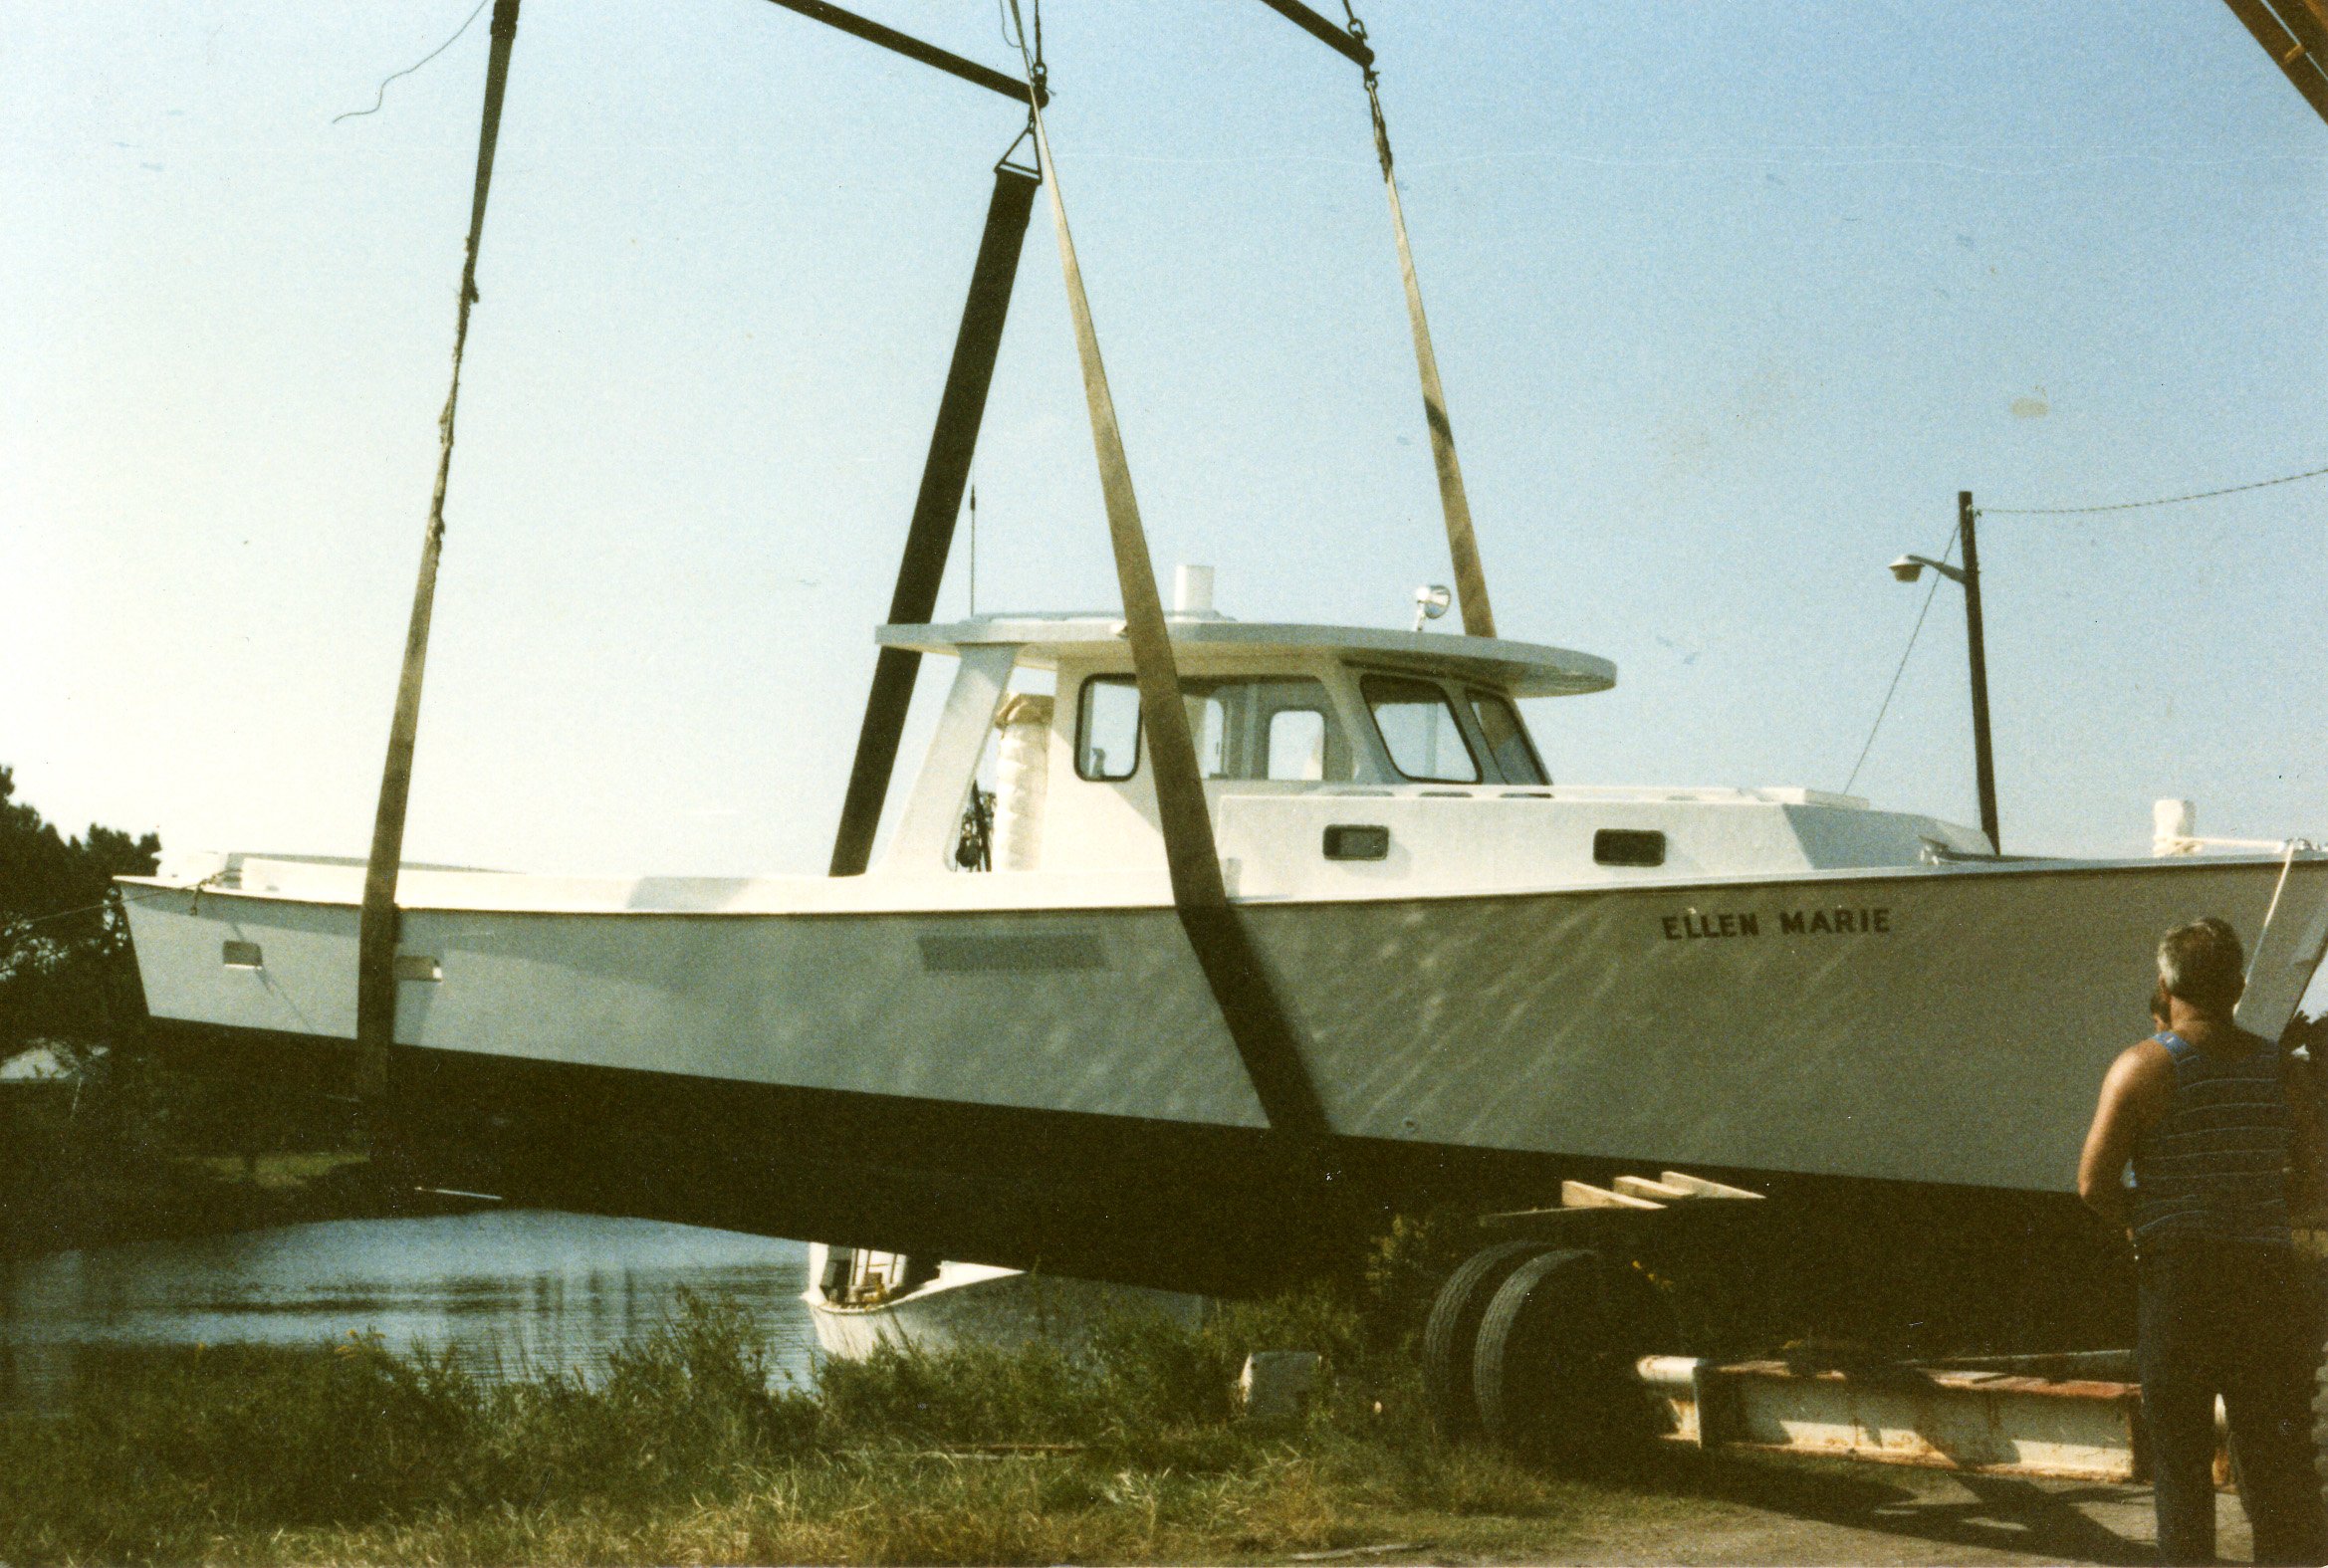 Dewey Piner’s crane putting the F/V Ellen Marie in the water, 1985